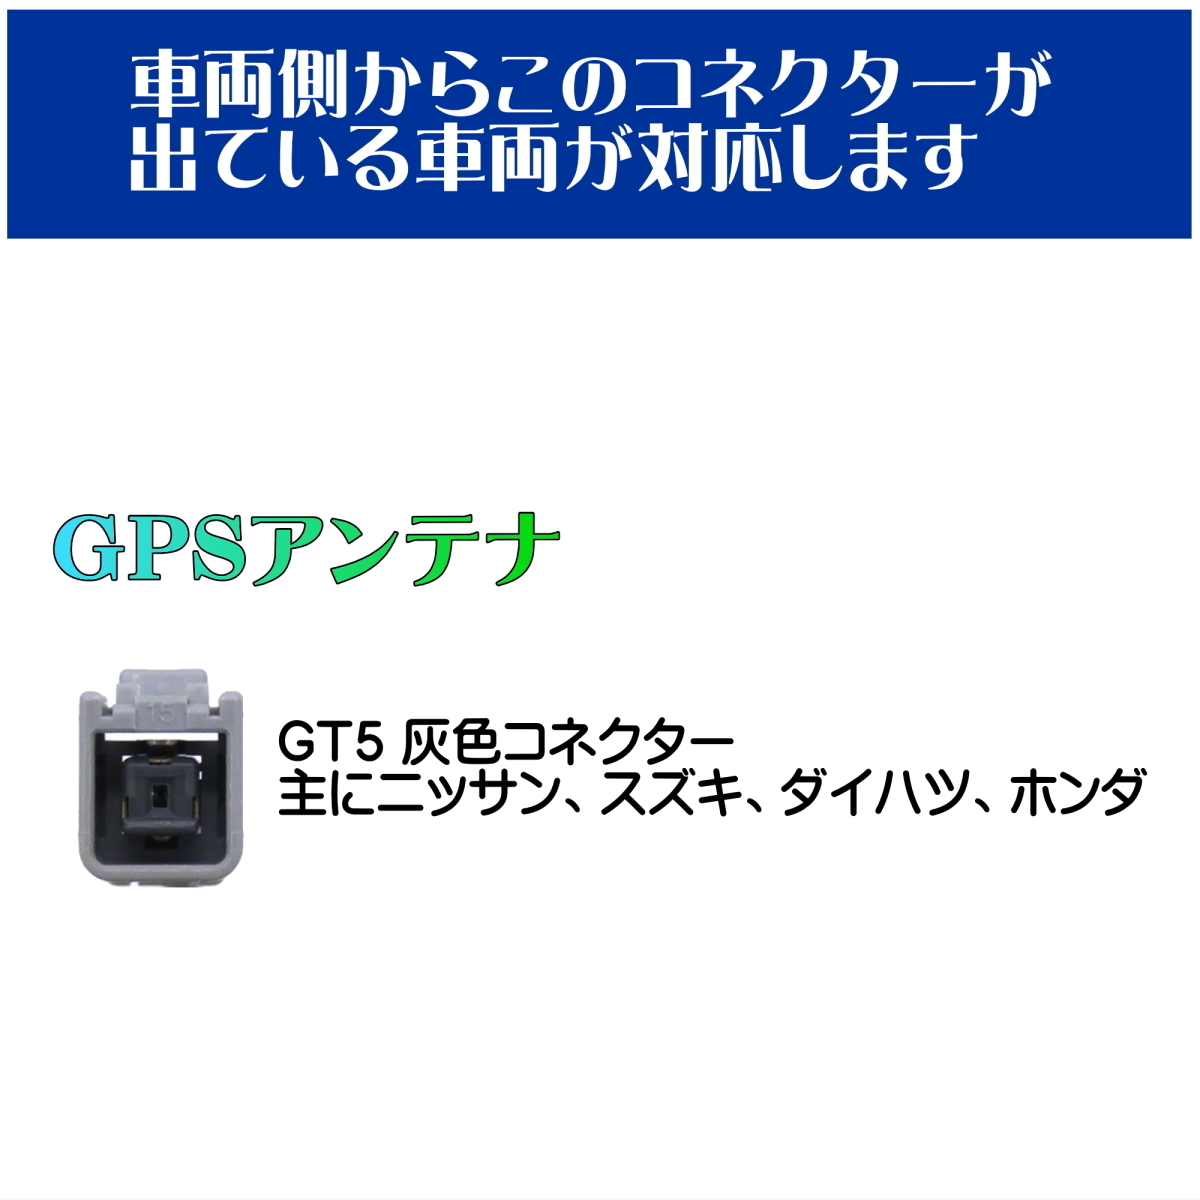 BUST BEAT カーナビ GPS アンテナ 変換 ケーブル ダイハツ ホンダ スズキ ニッサン ミツビシ スバル マツダ 対応 GT5 GT16_画像6